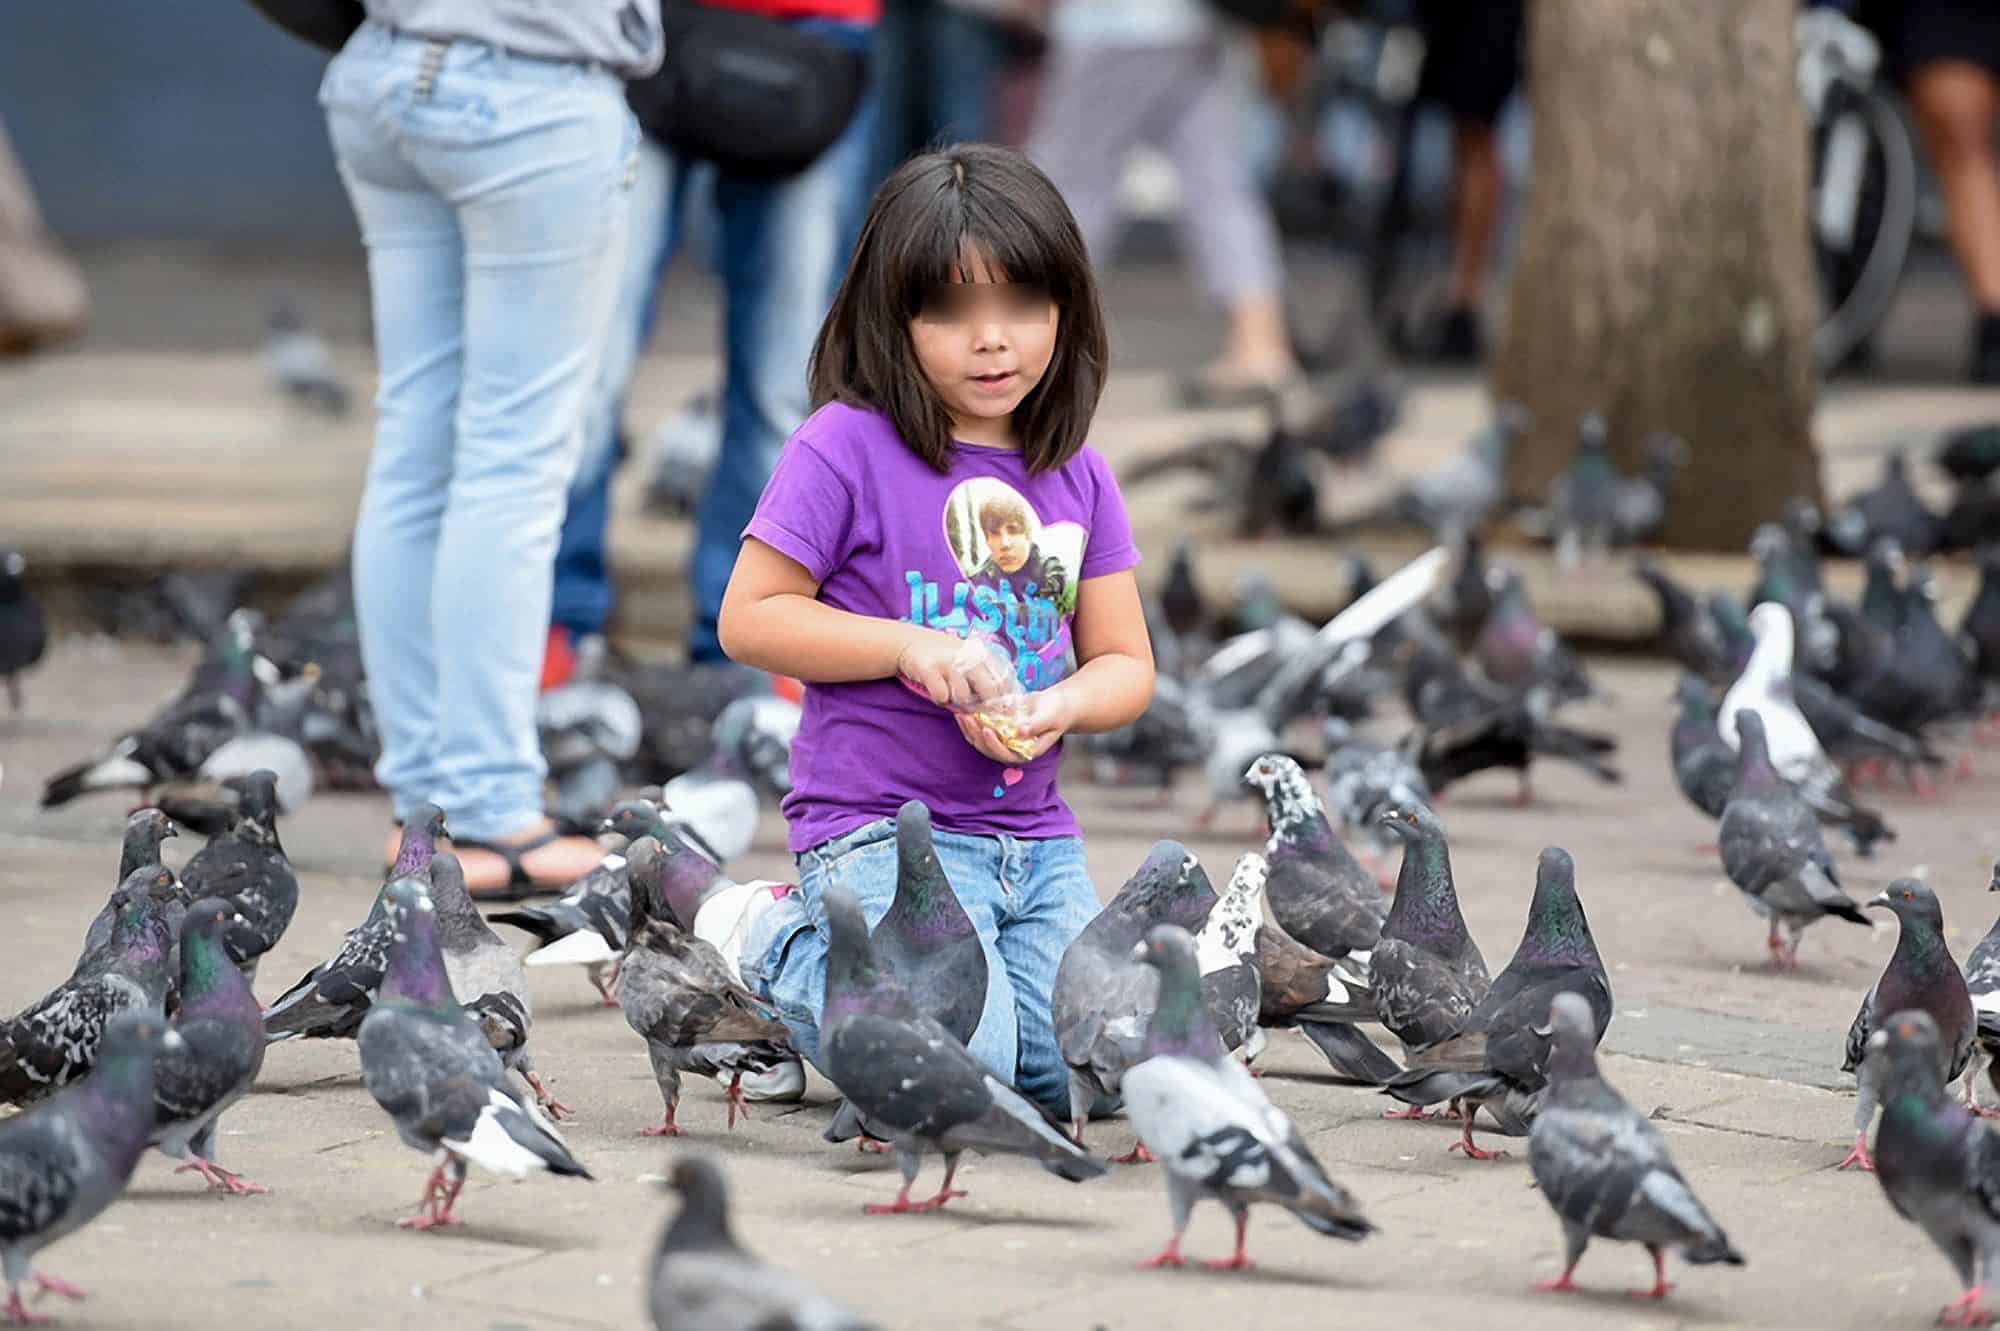 Pigeons at Plaza de la Cultura